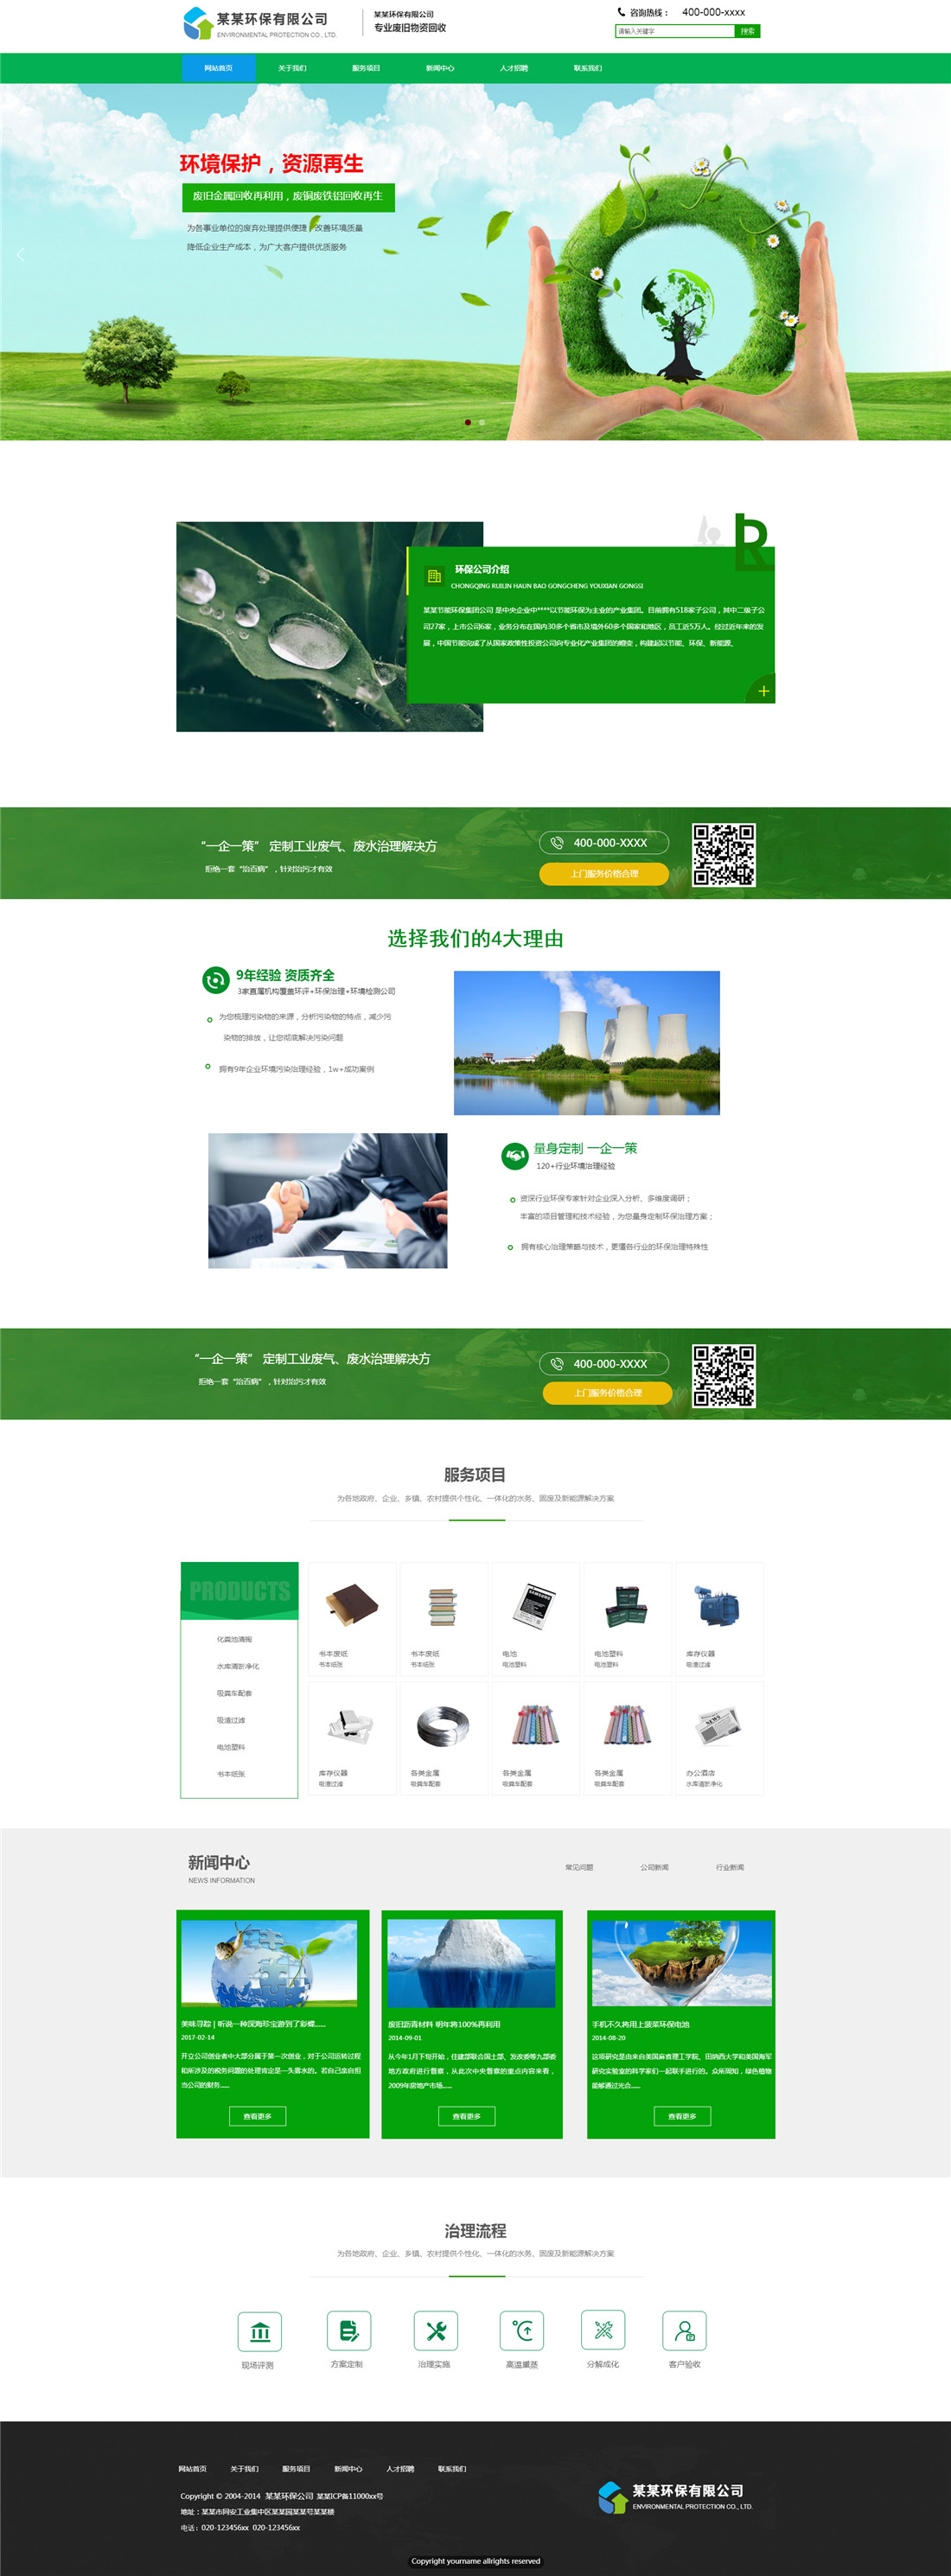 武汉企业网站维护,做网站设计的公司